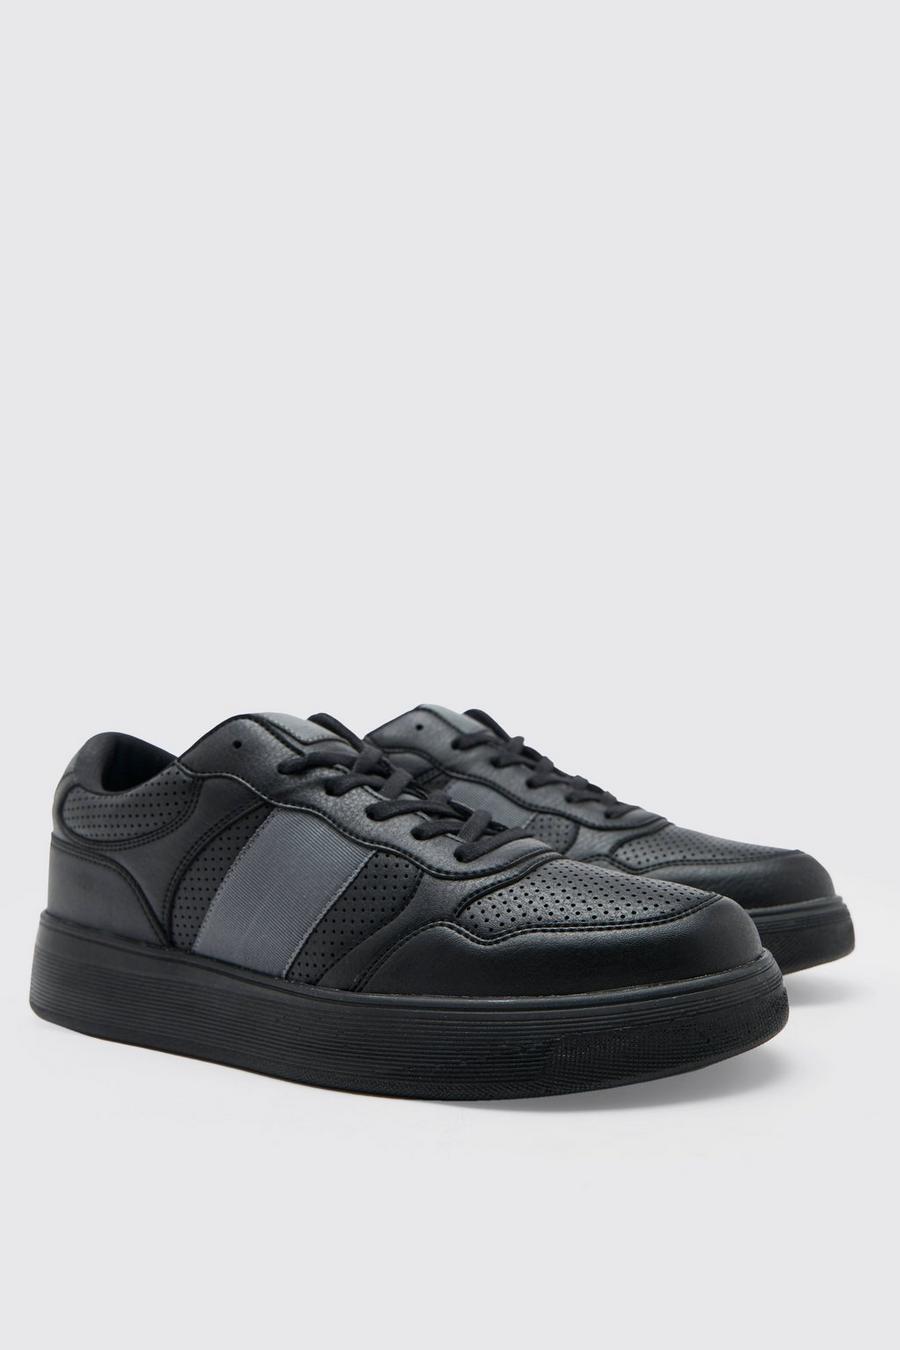 שחור נעלי ספורט מבד מחורר עם פס במרקם מנוגד image number 1